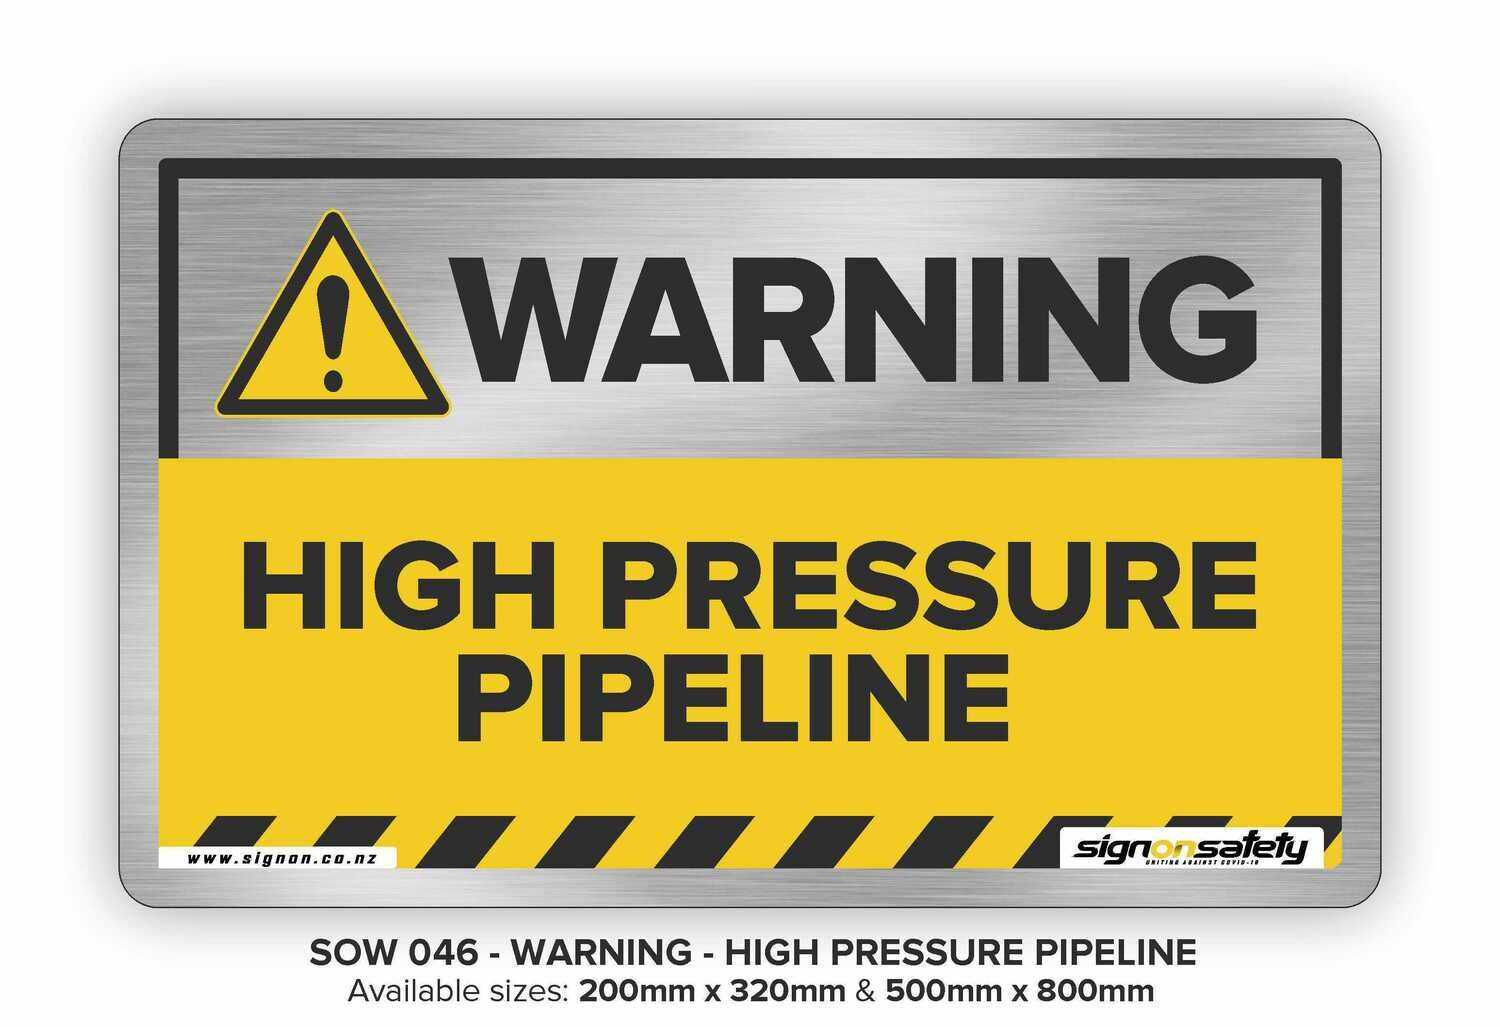 Warning - High Pressure Pipeline